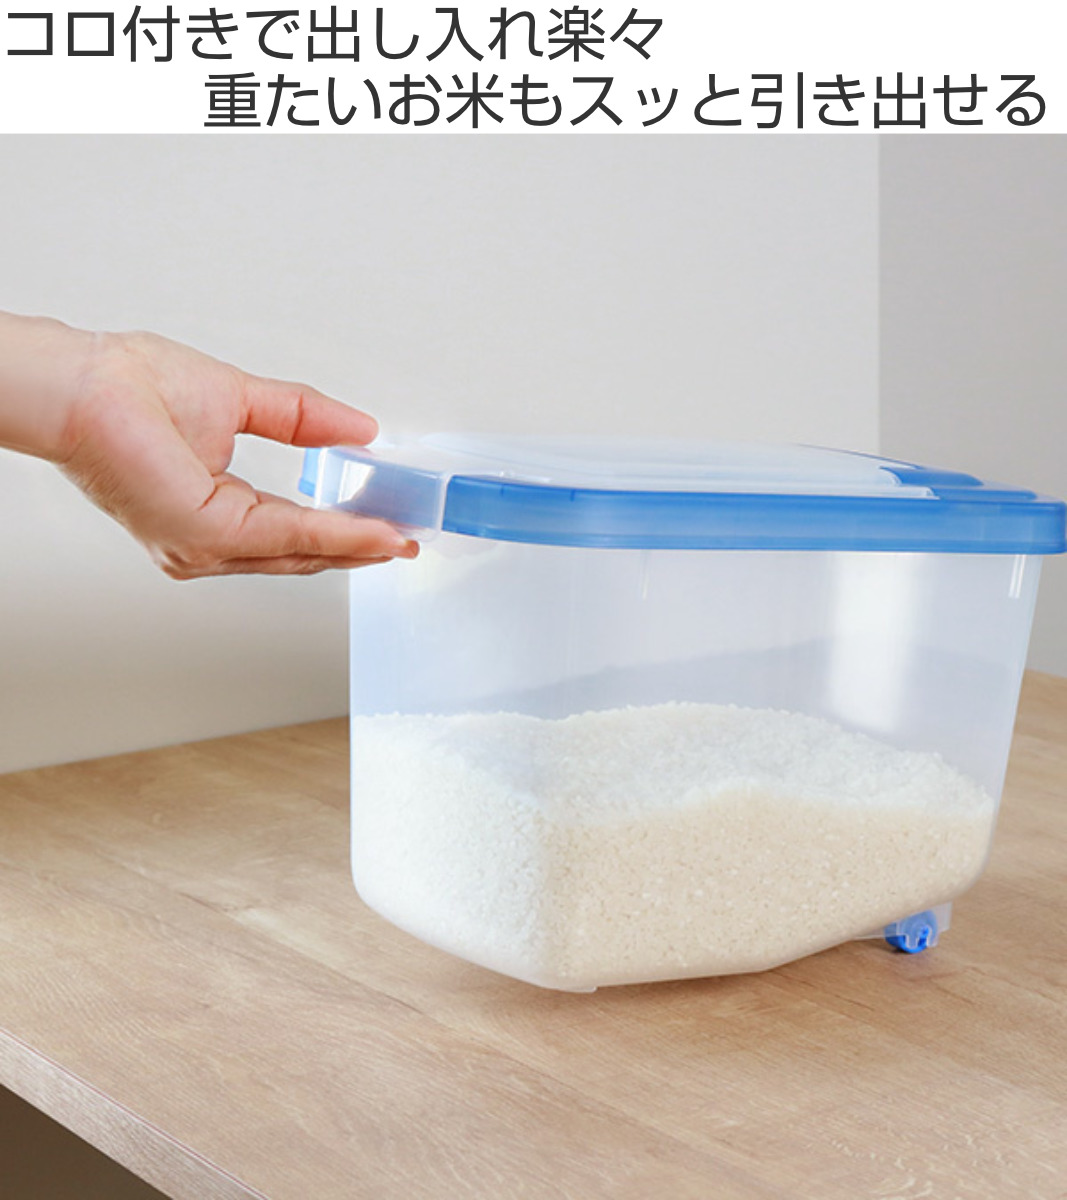 米びつ 5kg用 キャスター付き スライド米びつ （ 米櫃 こめびつ ライスボックス ）